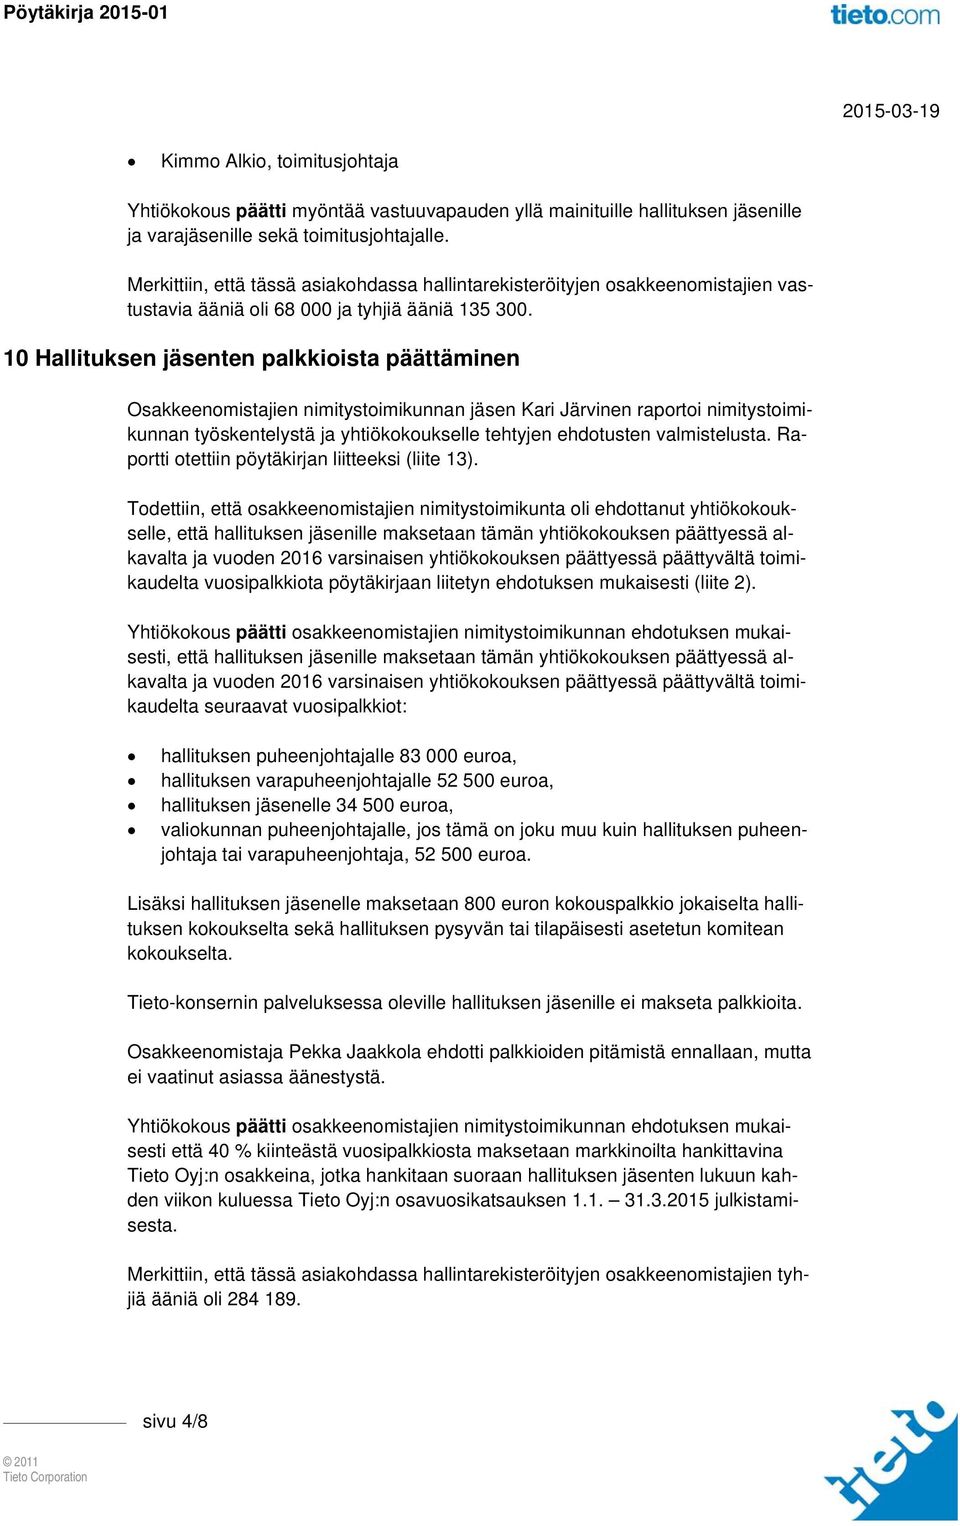 10 Hallituksen jäsenten palkkioista päättäminen Osakkeenomistajien nimitystoimikunnan jäsen Kari Järvinen raportoi nimitystoimikunnan työskentelystä ja yhtiökokoukselle tehtyjen ehdotusten